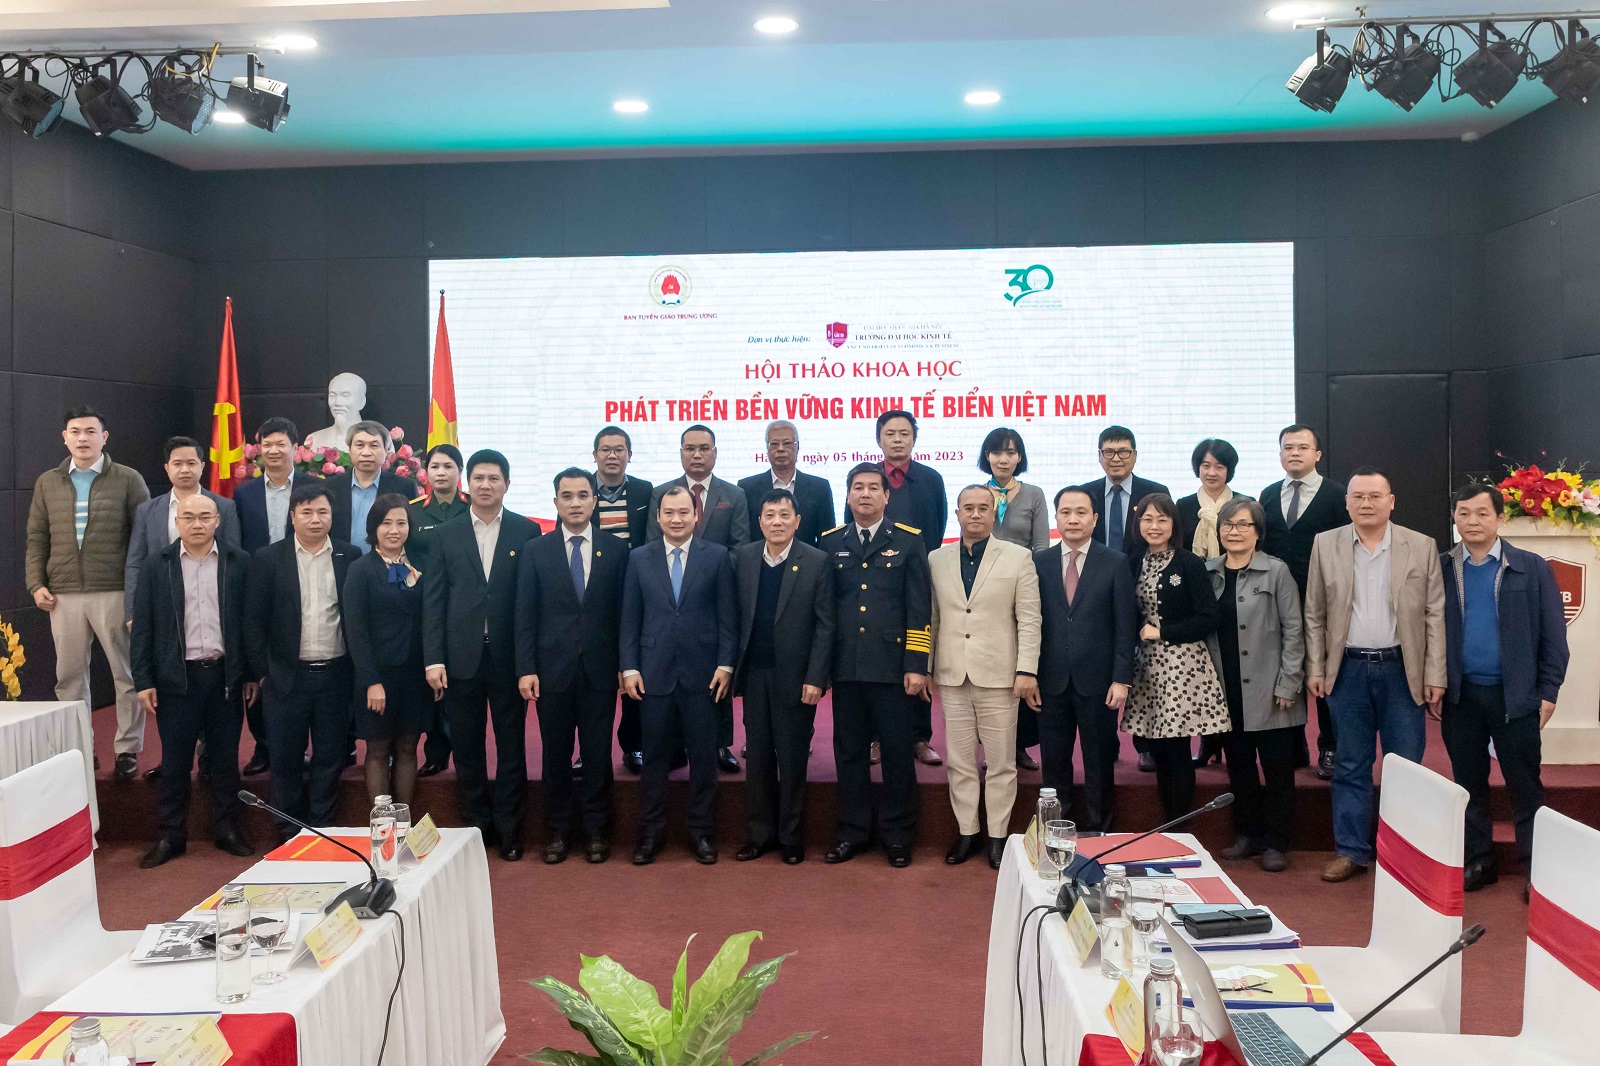 UEB phối hợp Ban tuyên giáo Trung ương, Đại học Quốc gia Hà Nội tổ chức Hội thảo khoa học “Phát triển bền vững kinh tế biển Việt Nam”